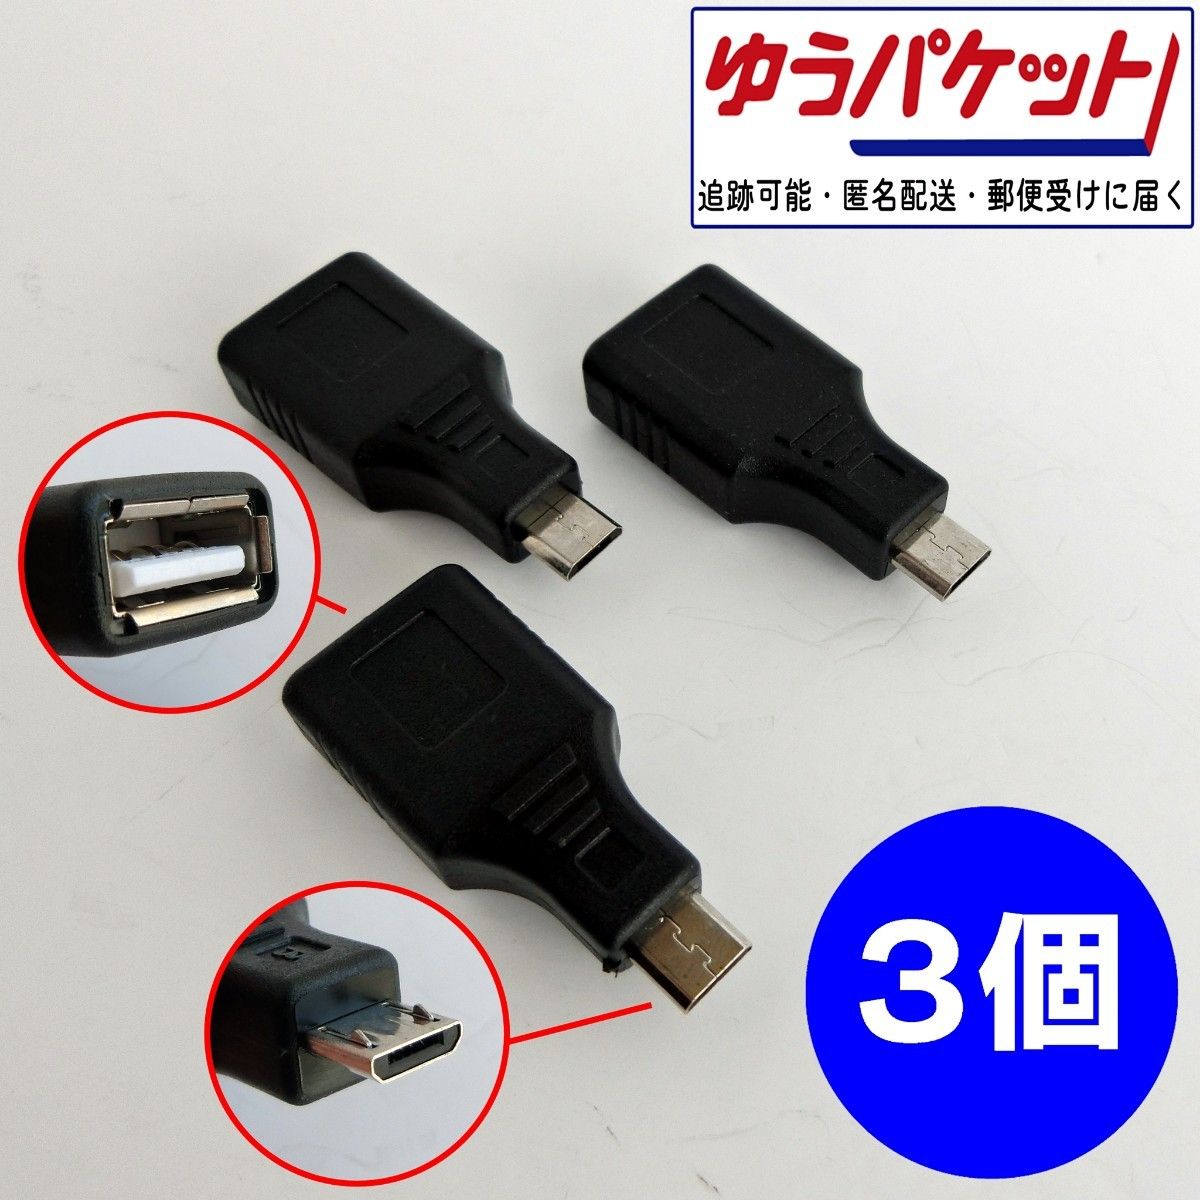 人気の製品 USB2.0 to microUSB 変換アダプタ 白色 1個 便利 コネクター